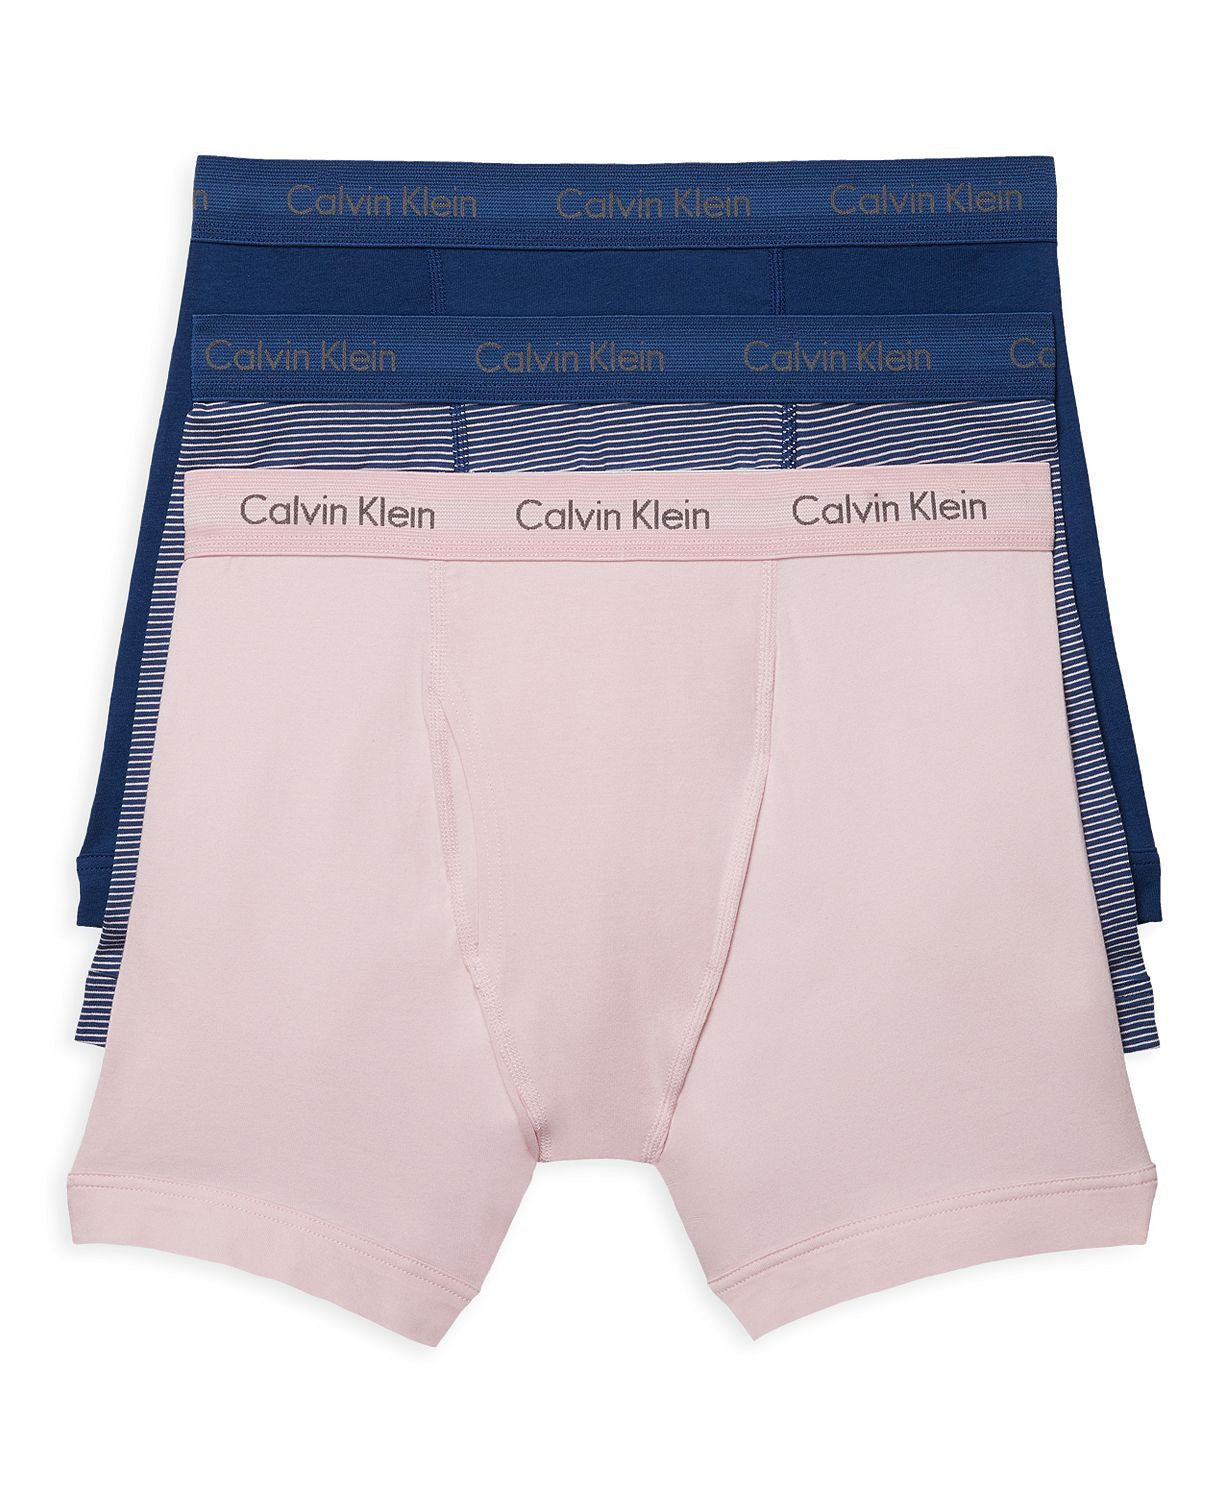 Calvin Klein Cotton Stretch Boxer Briefs Pack Of 3 Pink/blue Stripe/blue